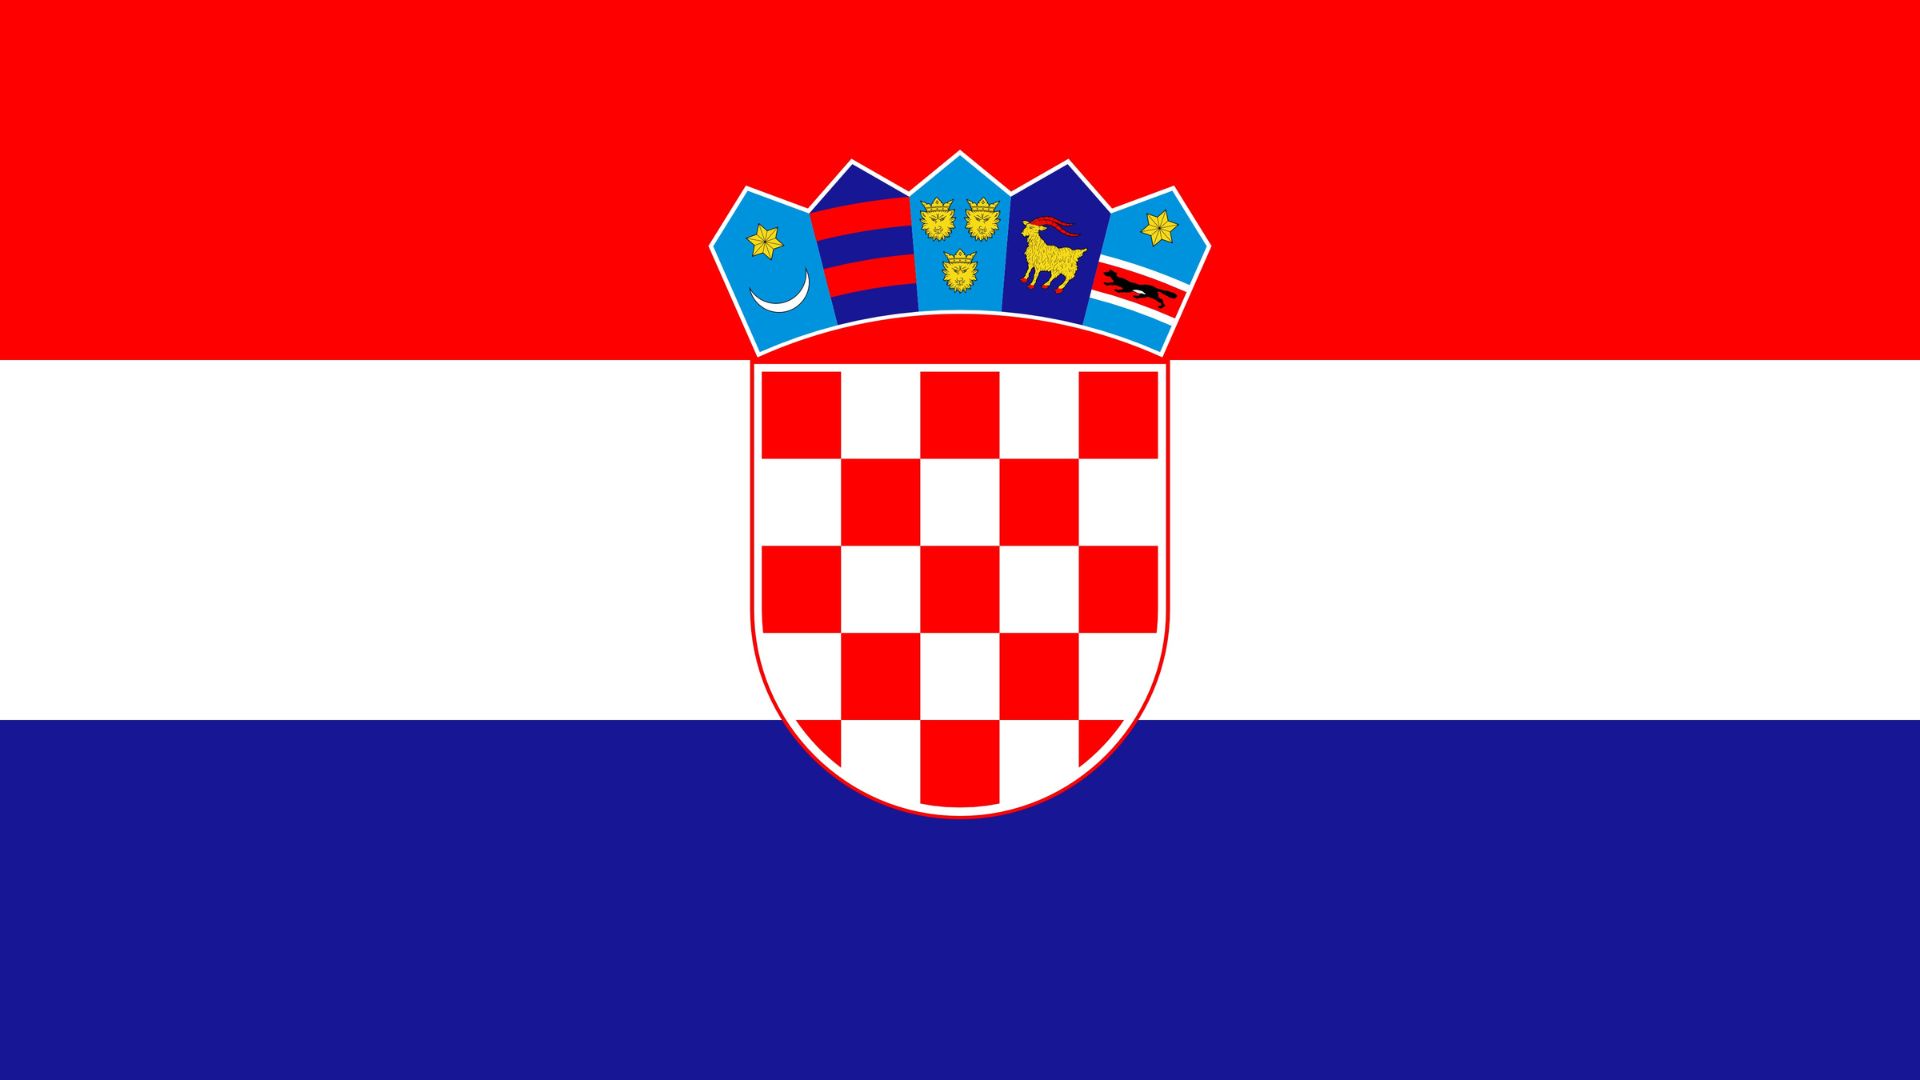 A bandeira da Croácia consiste em um retângulo dividido em três listas horizontais nas cores vermelho, branco e azul. No centro da faixa branca está o brasão de armas da Croácia, que consiste em um escudo do tipo português quadriculado nas cores vermelho e branco.